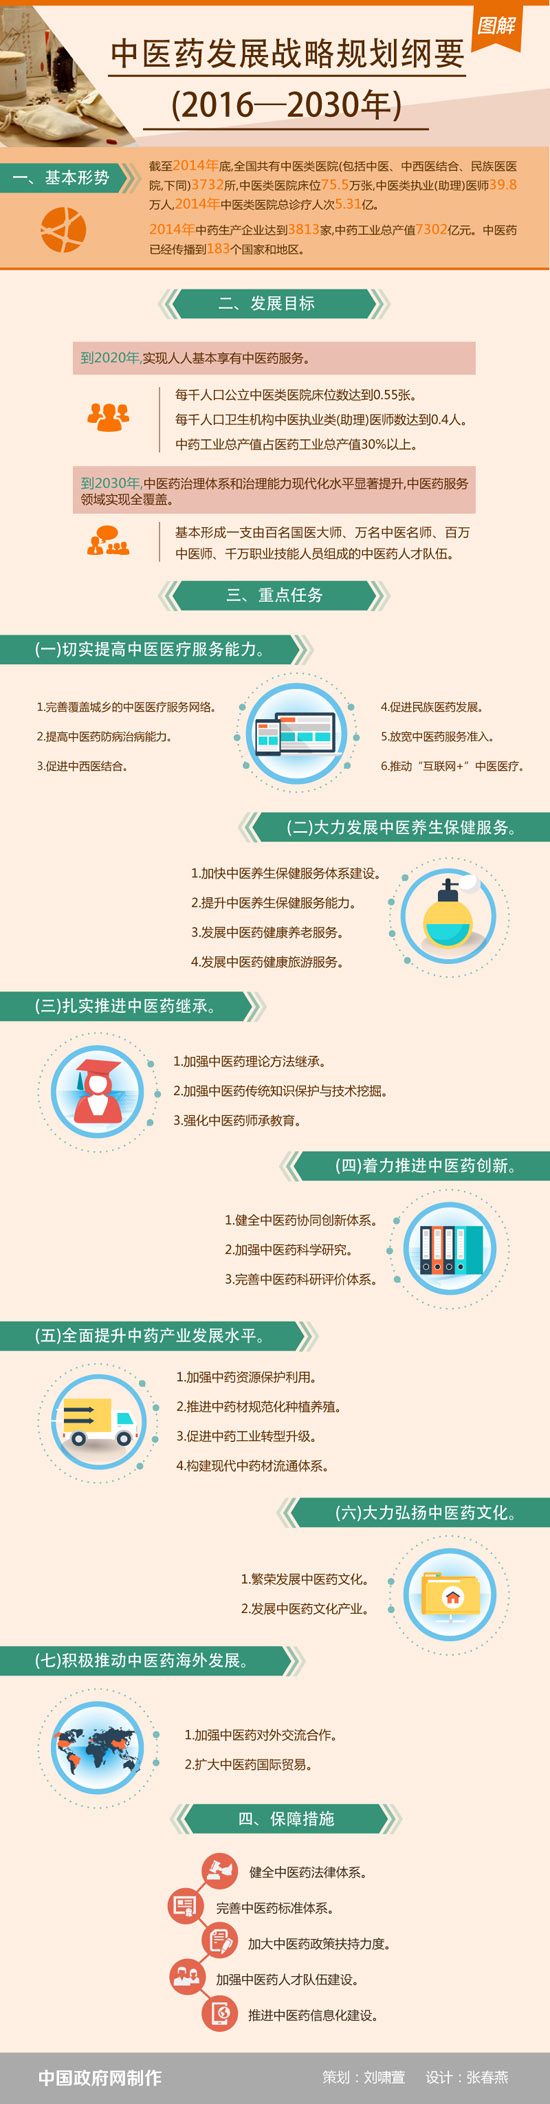 中医药发展战略规划纲要（2016-2030年）图解